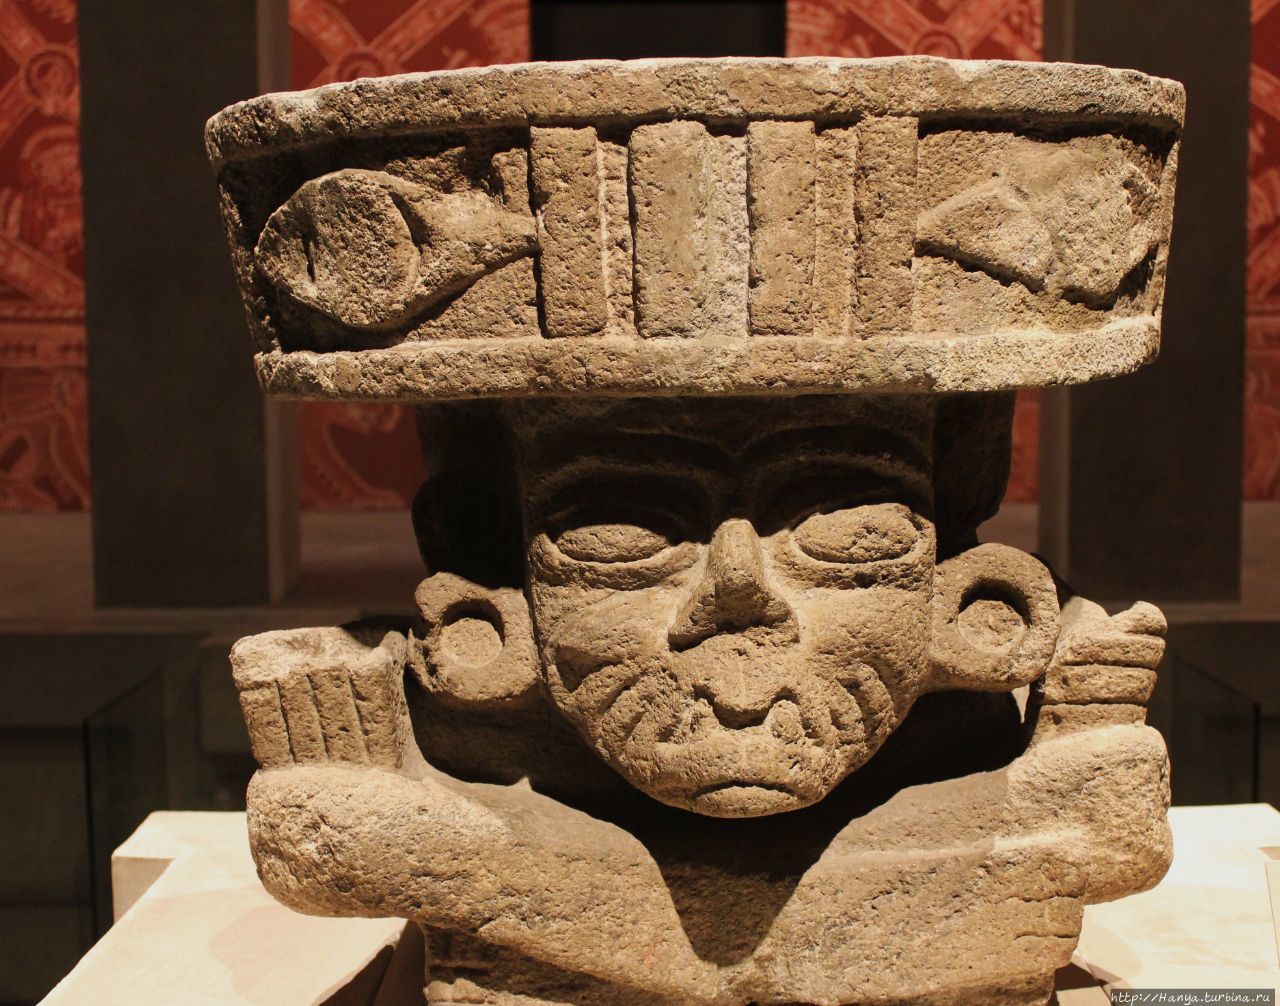 Скульптура-жаровня бога огня Huehueteotl, найденная при раскопках Теотиуакана. Находится в Музее антропологии Мехико. Из интернета